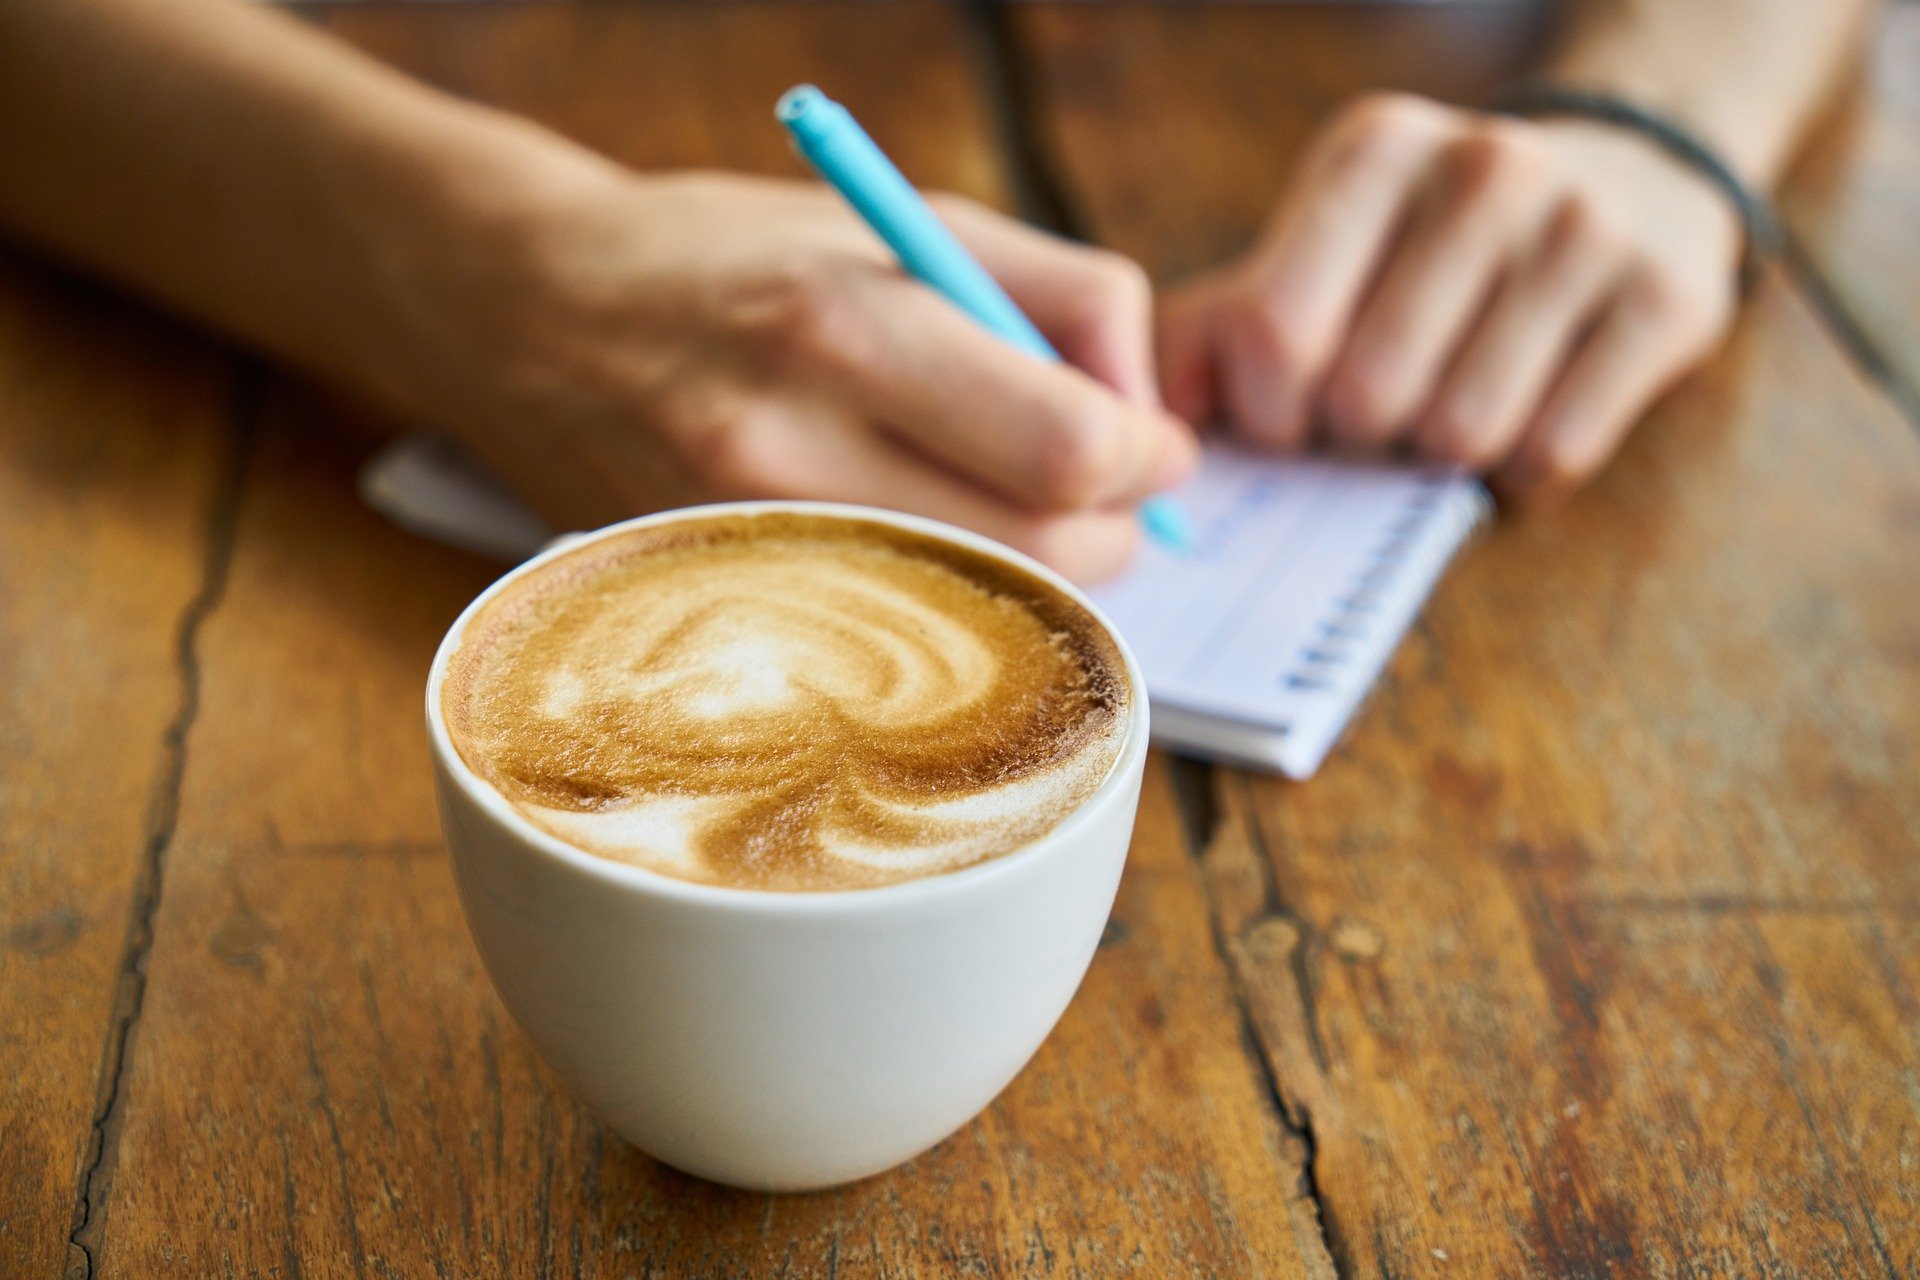 Qué va primero en la taza: café, agua, leche o azúcar? – El Financiero